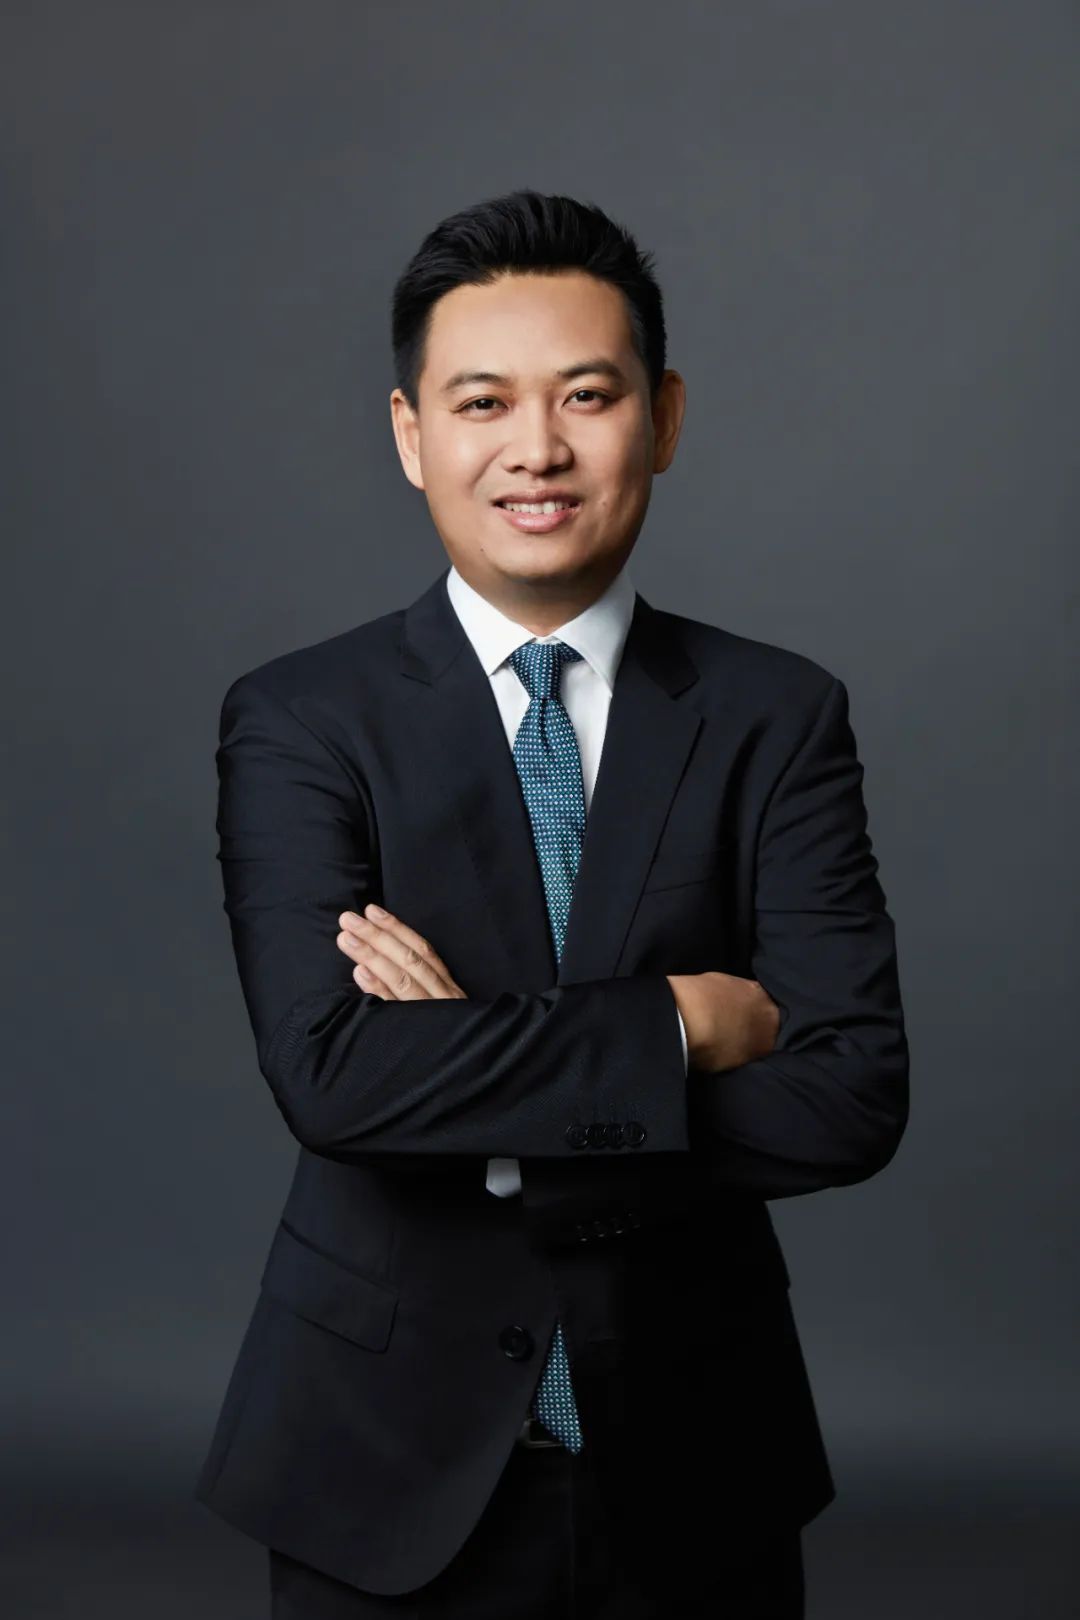 小马智行副总裁、自动驾驶卡车业务负责人 李衡宇